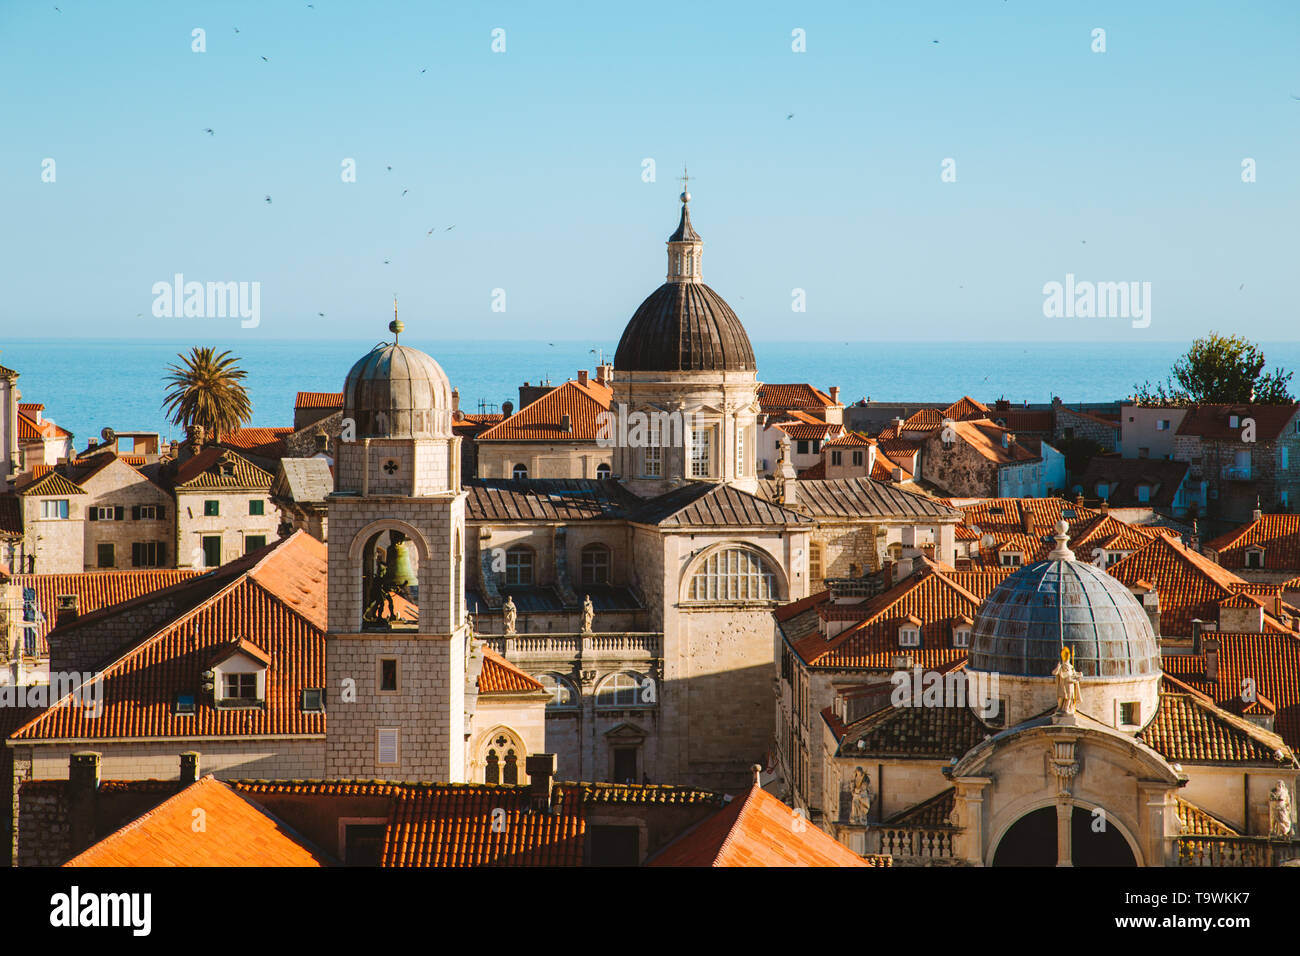 Classic vue panoramique sur la ville historique de Dubrovnik, l'une des plus célèbres destinations touristiques de la Méditerranée, au coucher du soleil, la Dalmatie, C Banque D'Images